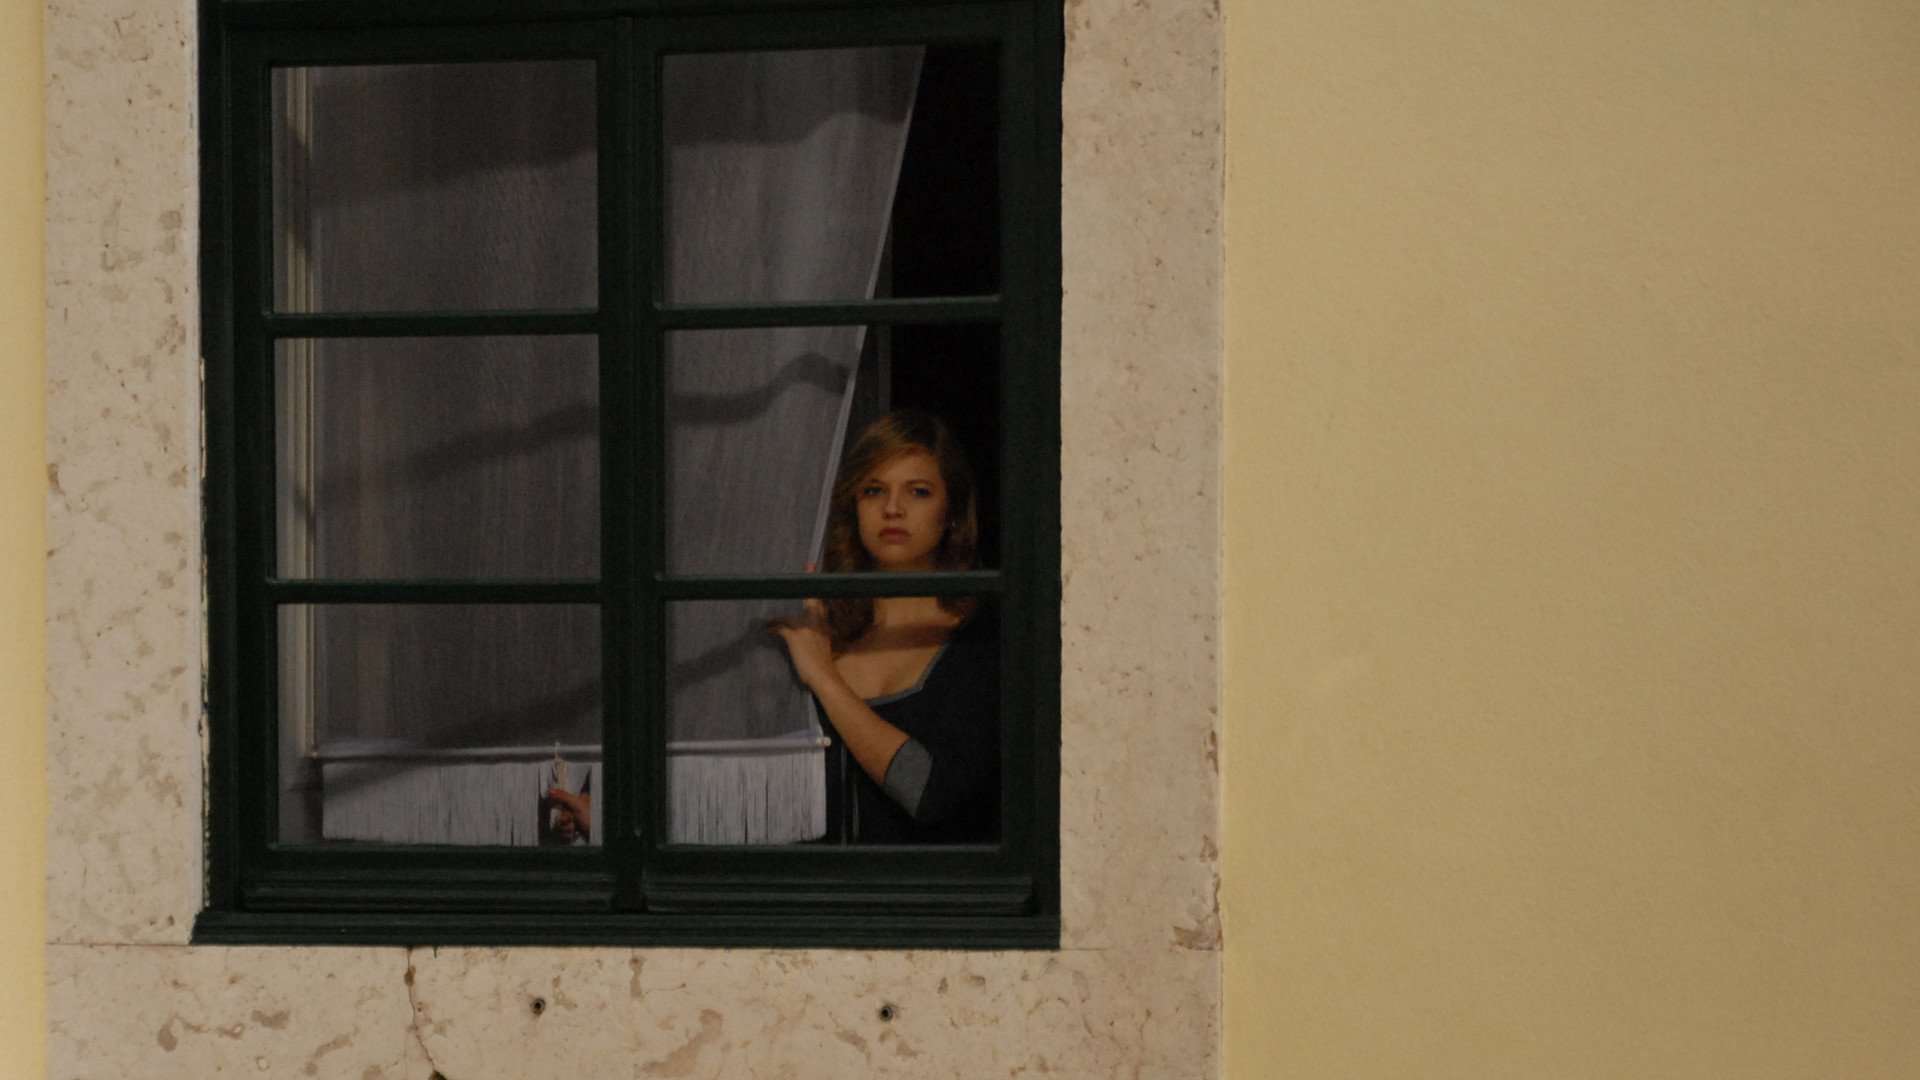 Окна тетка. Окна напротив. Девошка в окне на против. Девушка в окне напротив. Заглядывая в окна домов.